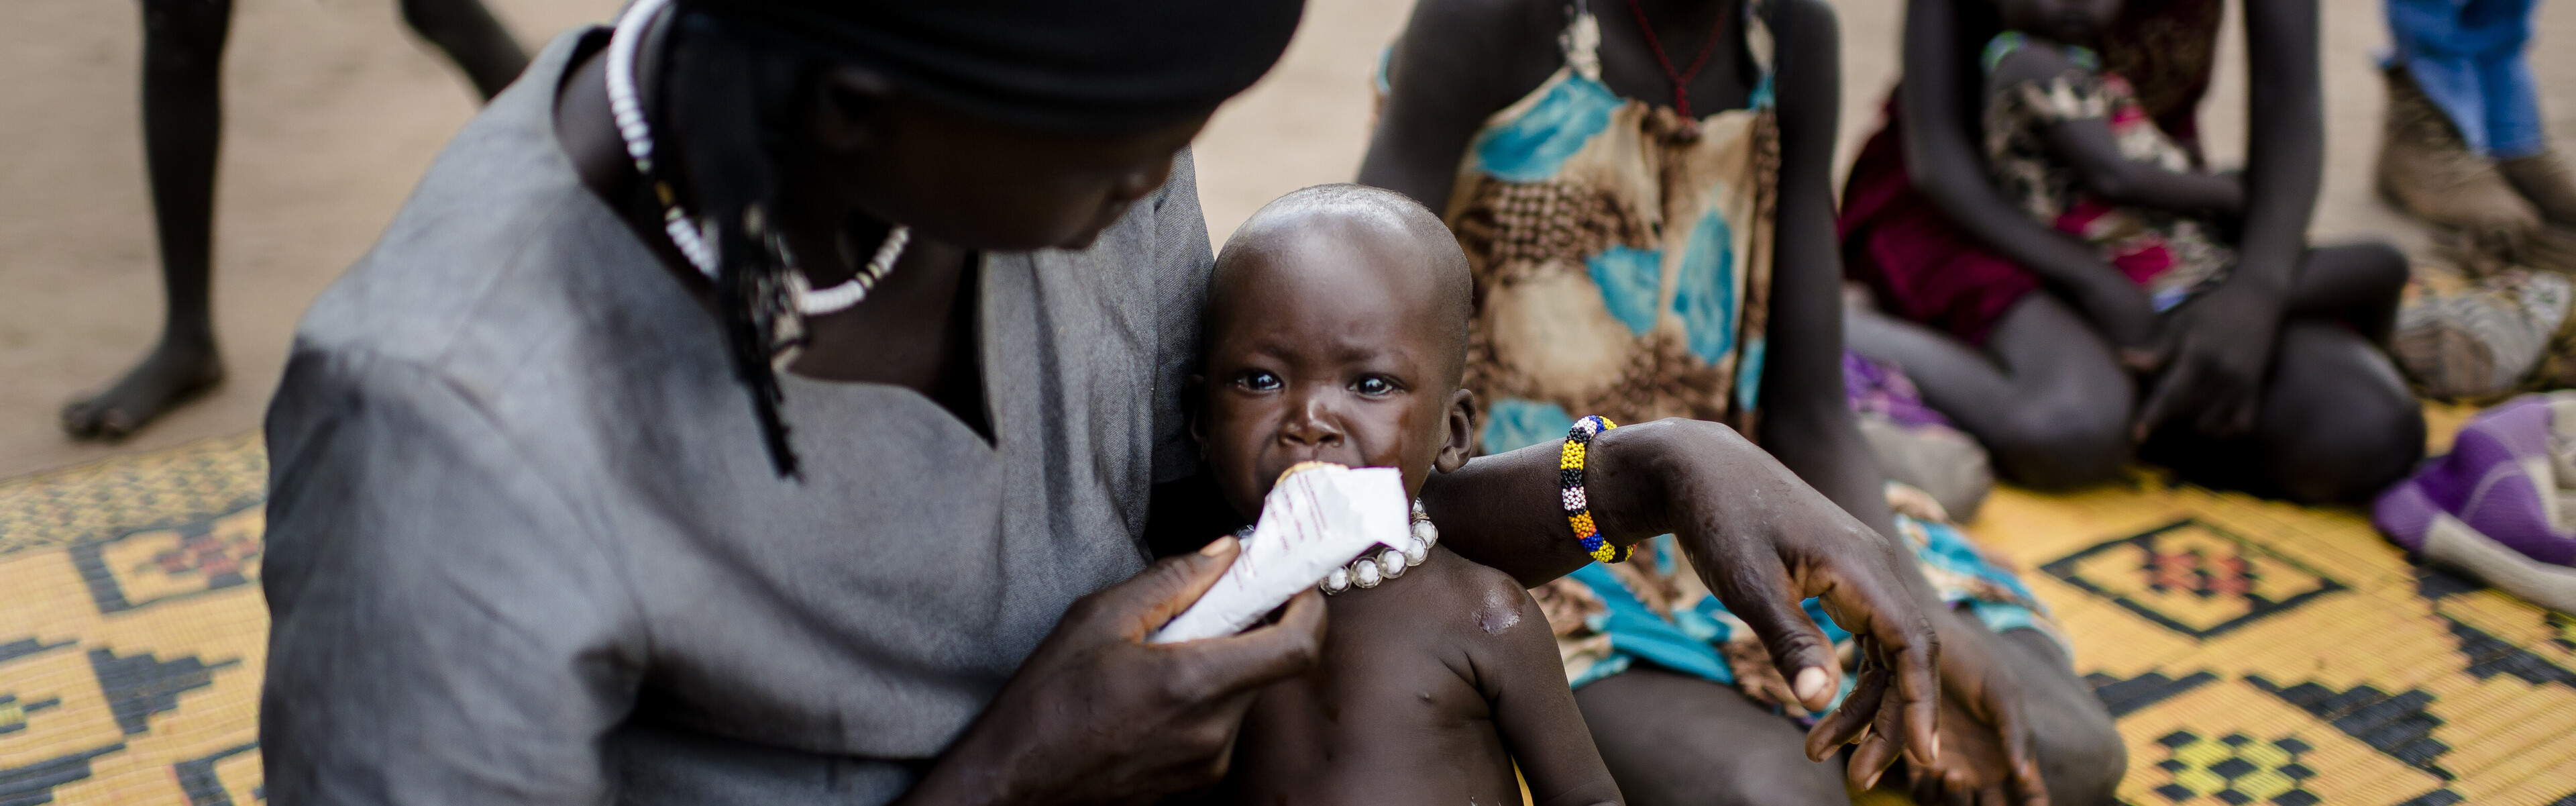 Im Südsudan versorgt eine Frau ihr unterernährtes Kind.